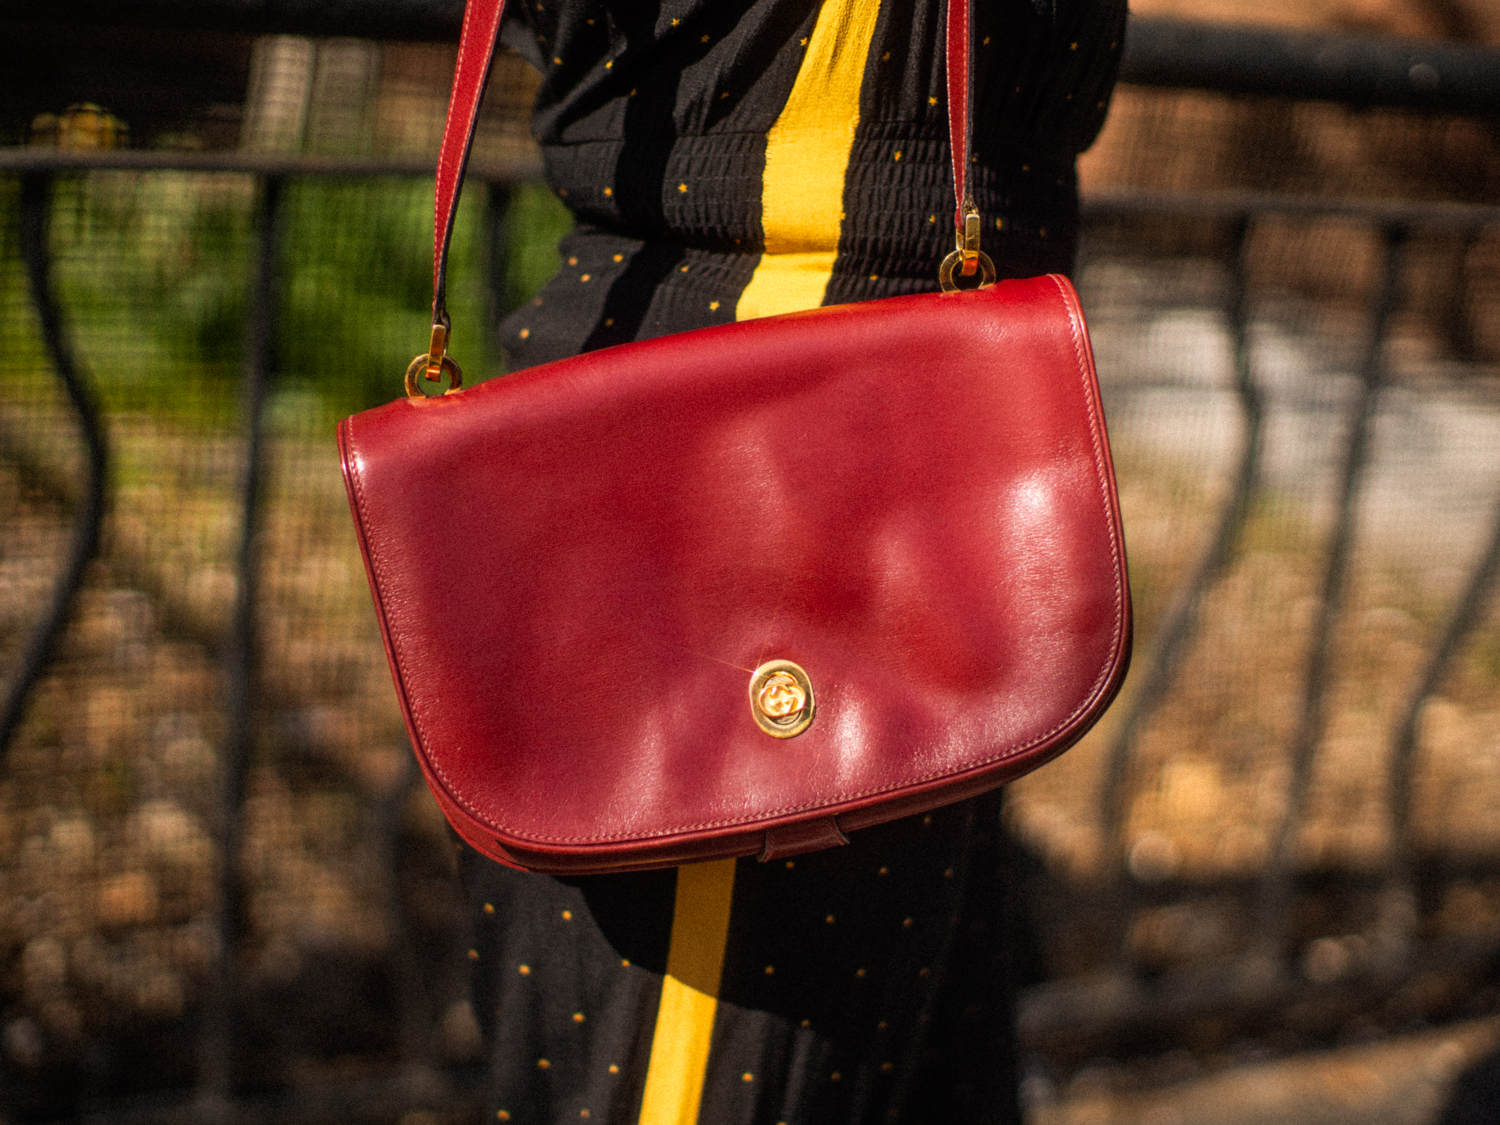 Vintage Gucci clutch/purse (shoulder bag). Pristine condition. No